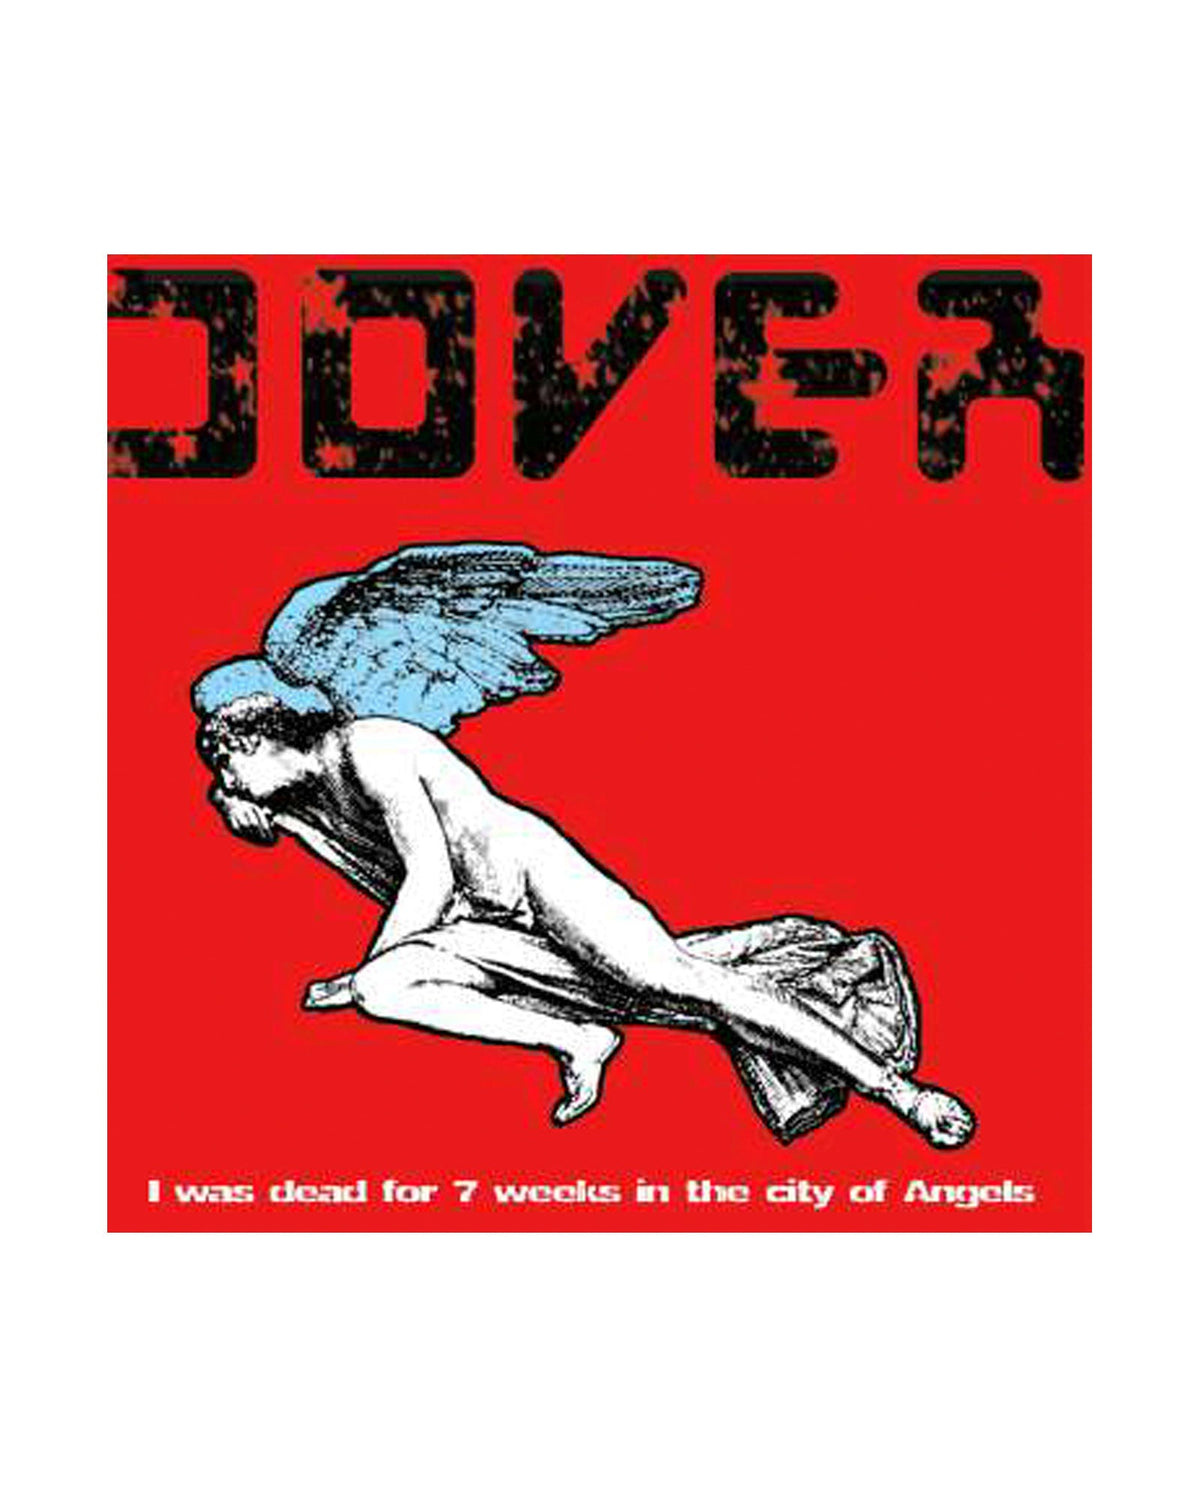 Dover - LP Vinilo "I Was Dead For 7 Weeks In The City Of Angels" - D2fy · Rocktud - Rocktud